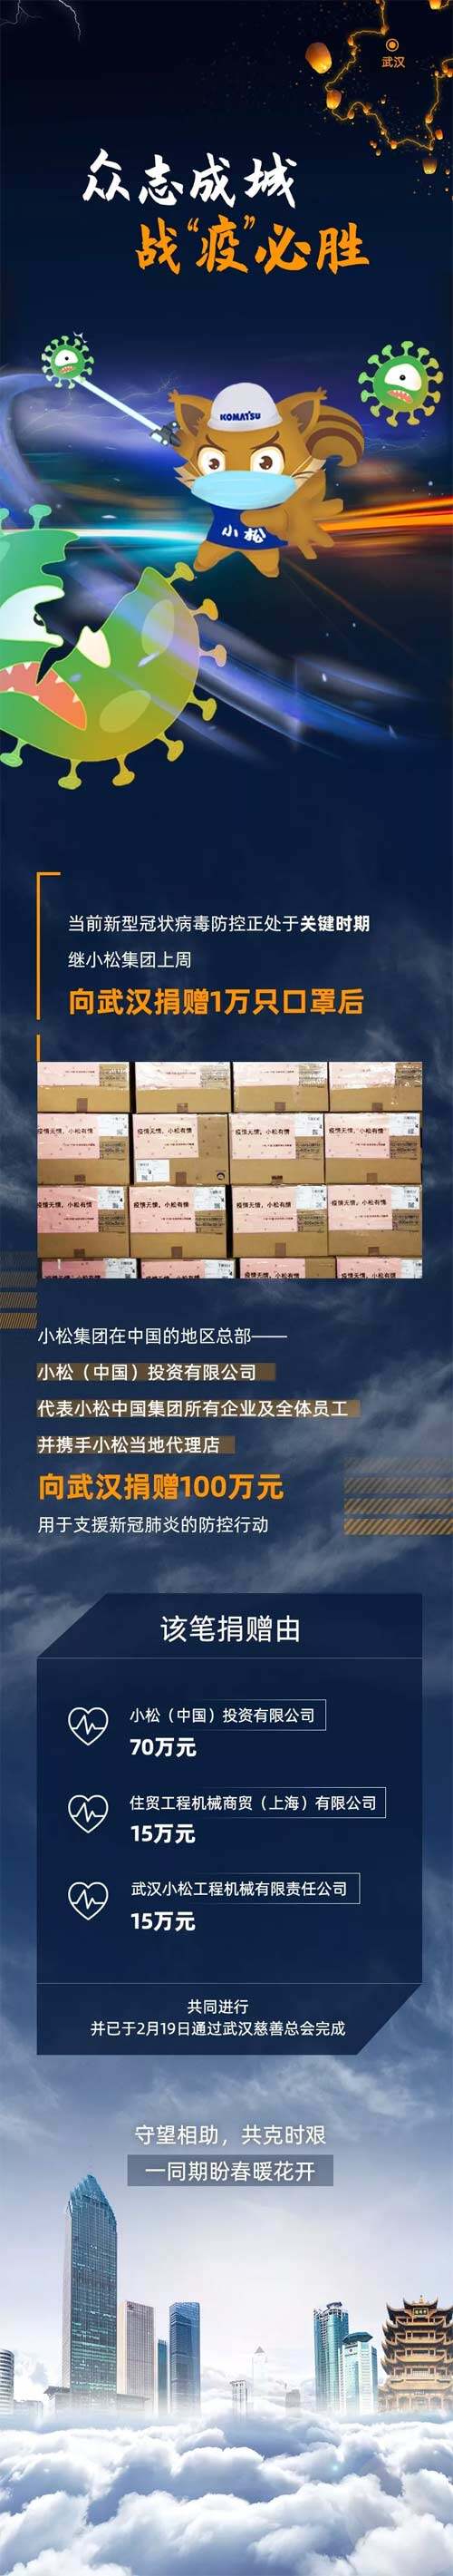 小松中国携手当地代理店捐款100万元支援新型冠状病毒疫情防控